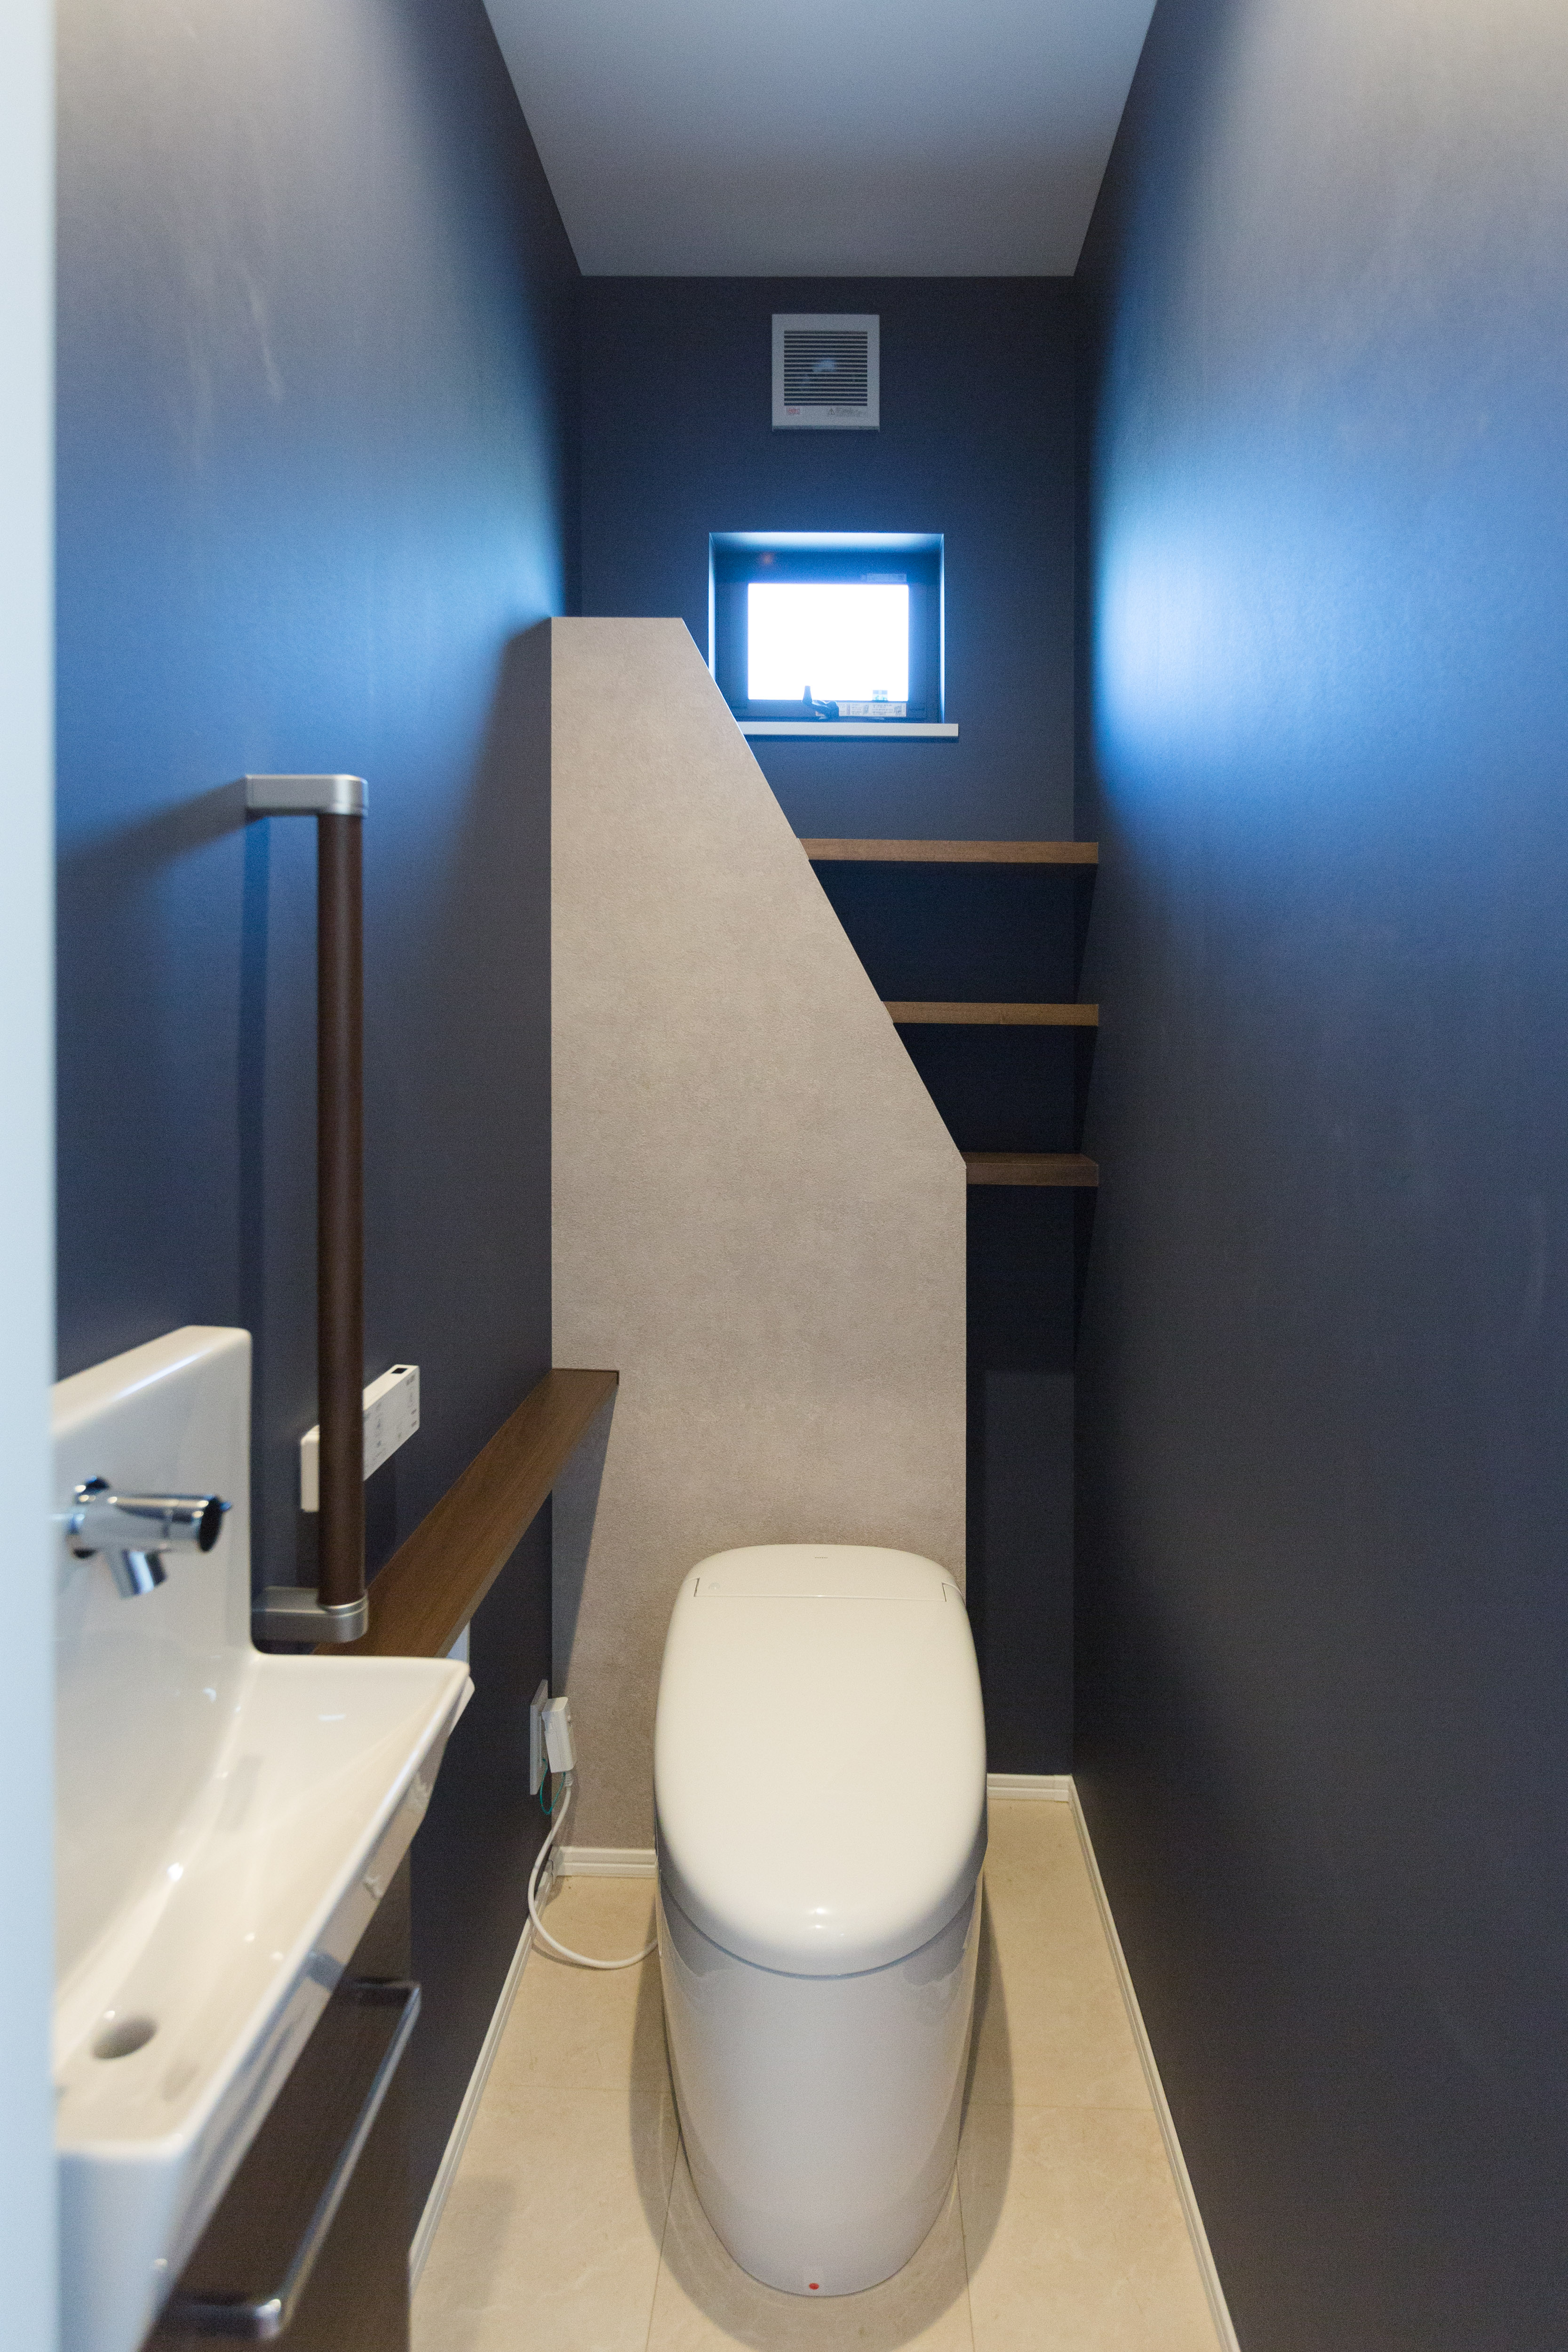 タンクレストイレはひとふきでお掃除できる柔らかなアールを描くデザイン。